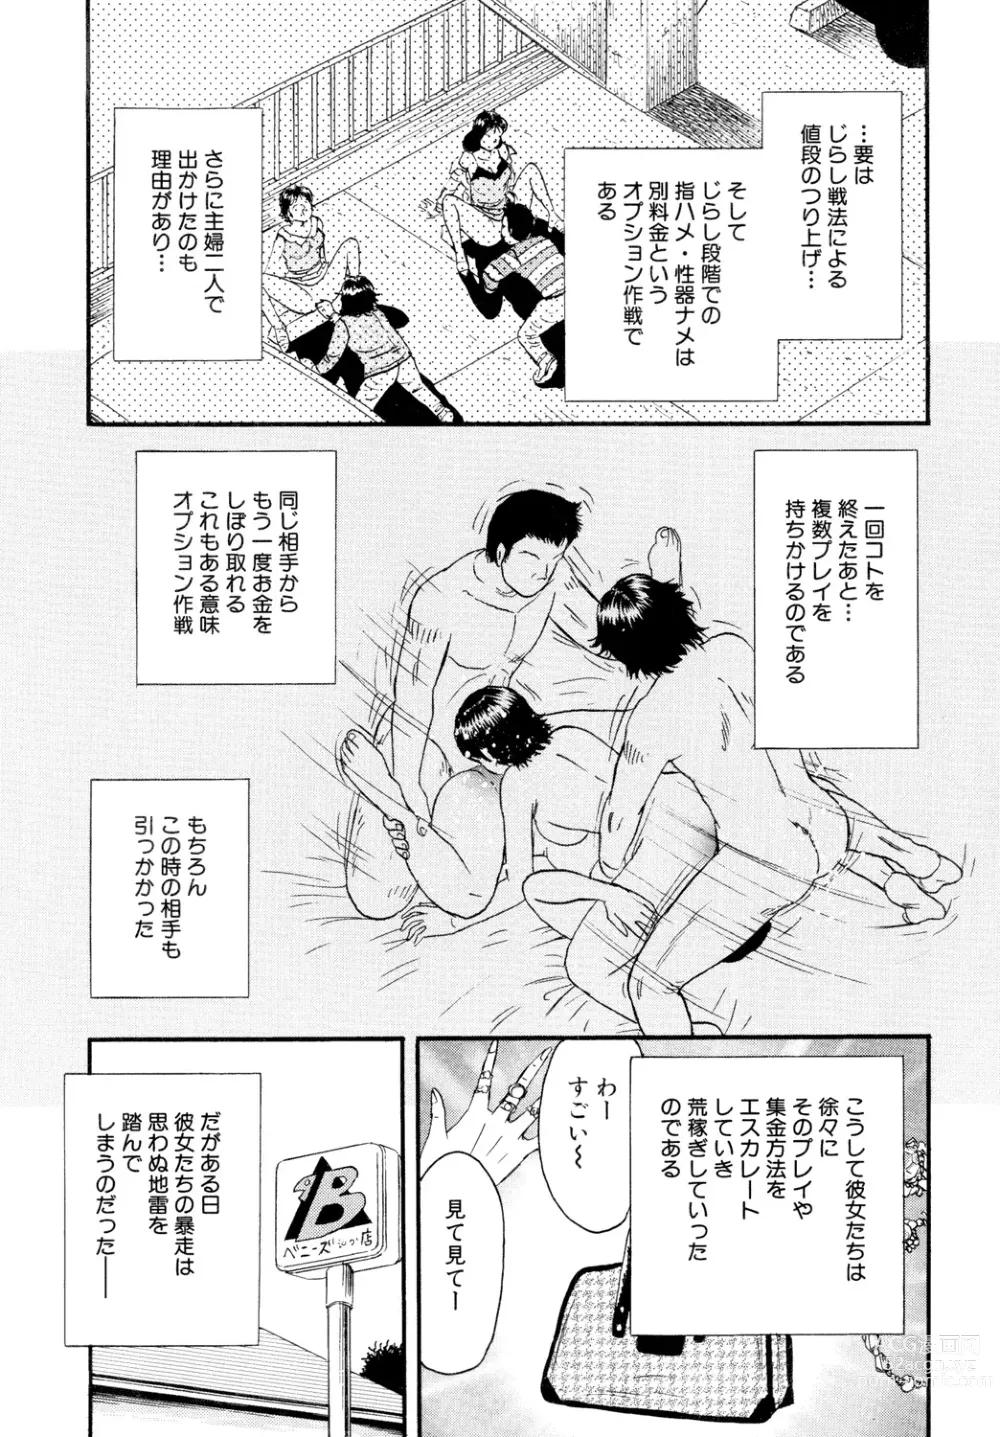 Page 145 of manga Nikuyoku no Utage